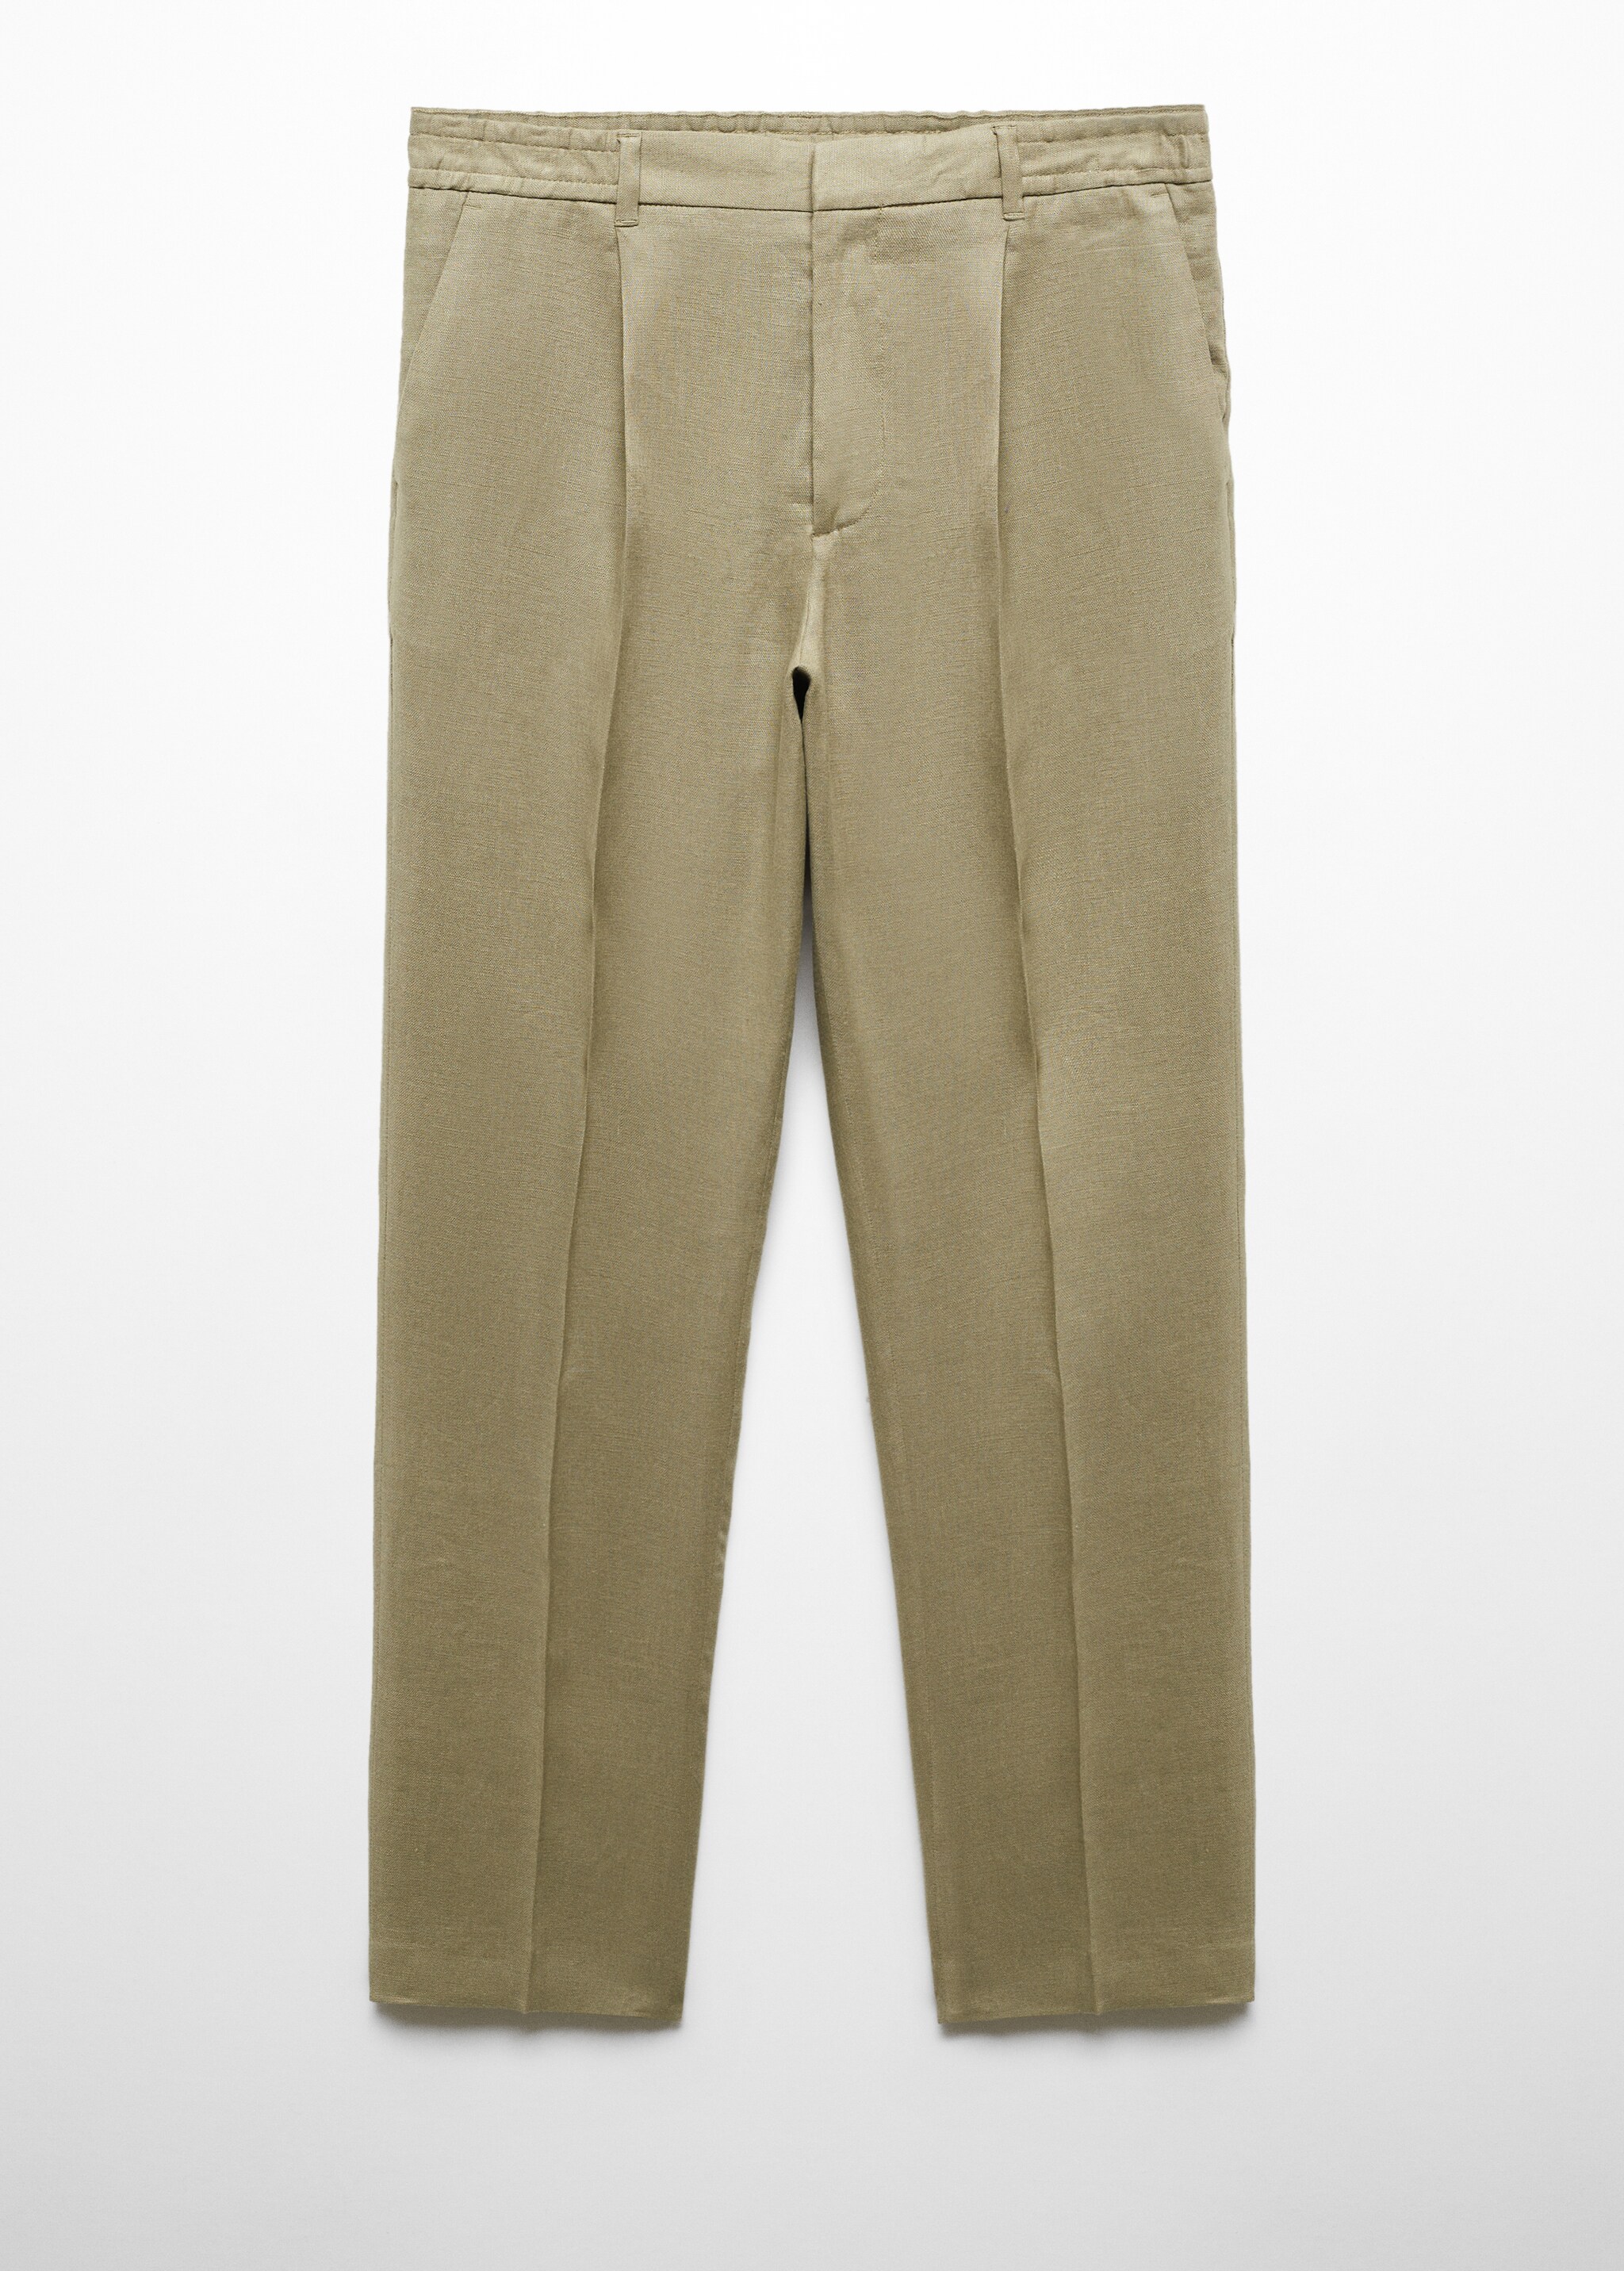 Pantalon 100 % lin regular fit - Article sans modèle